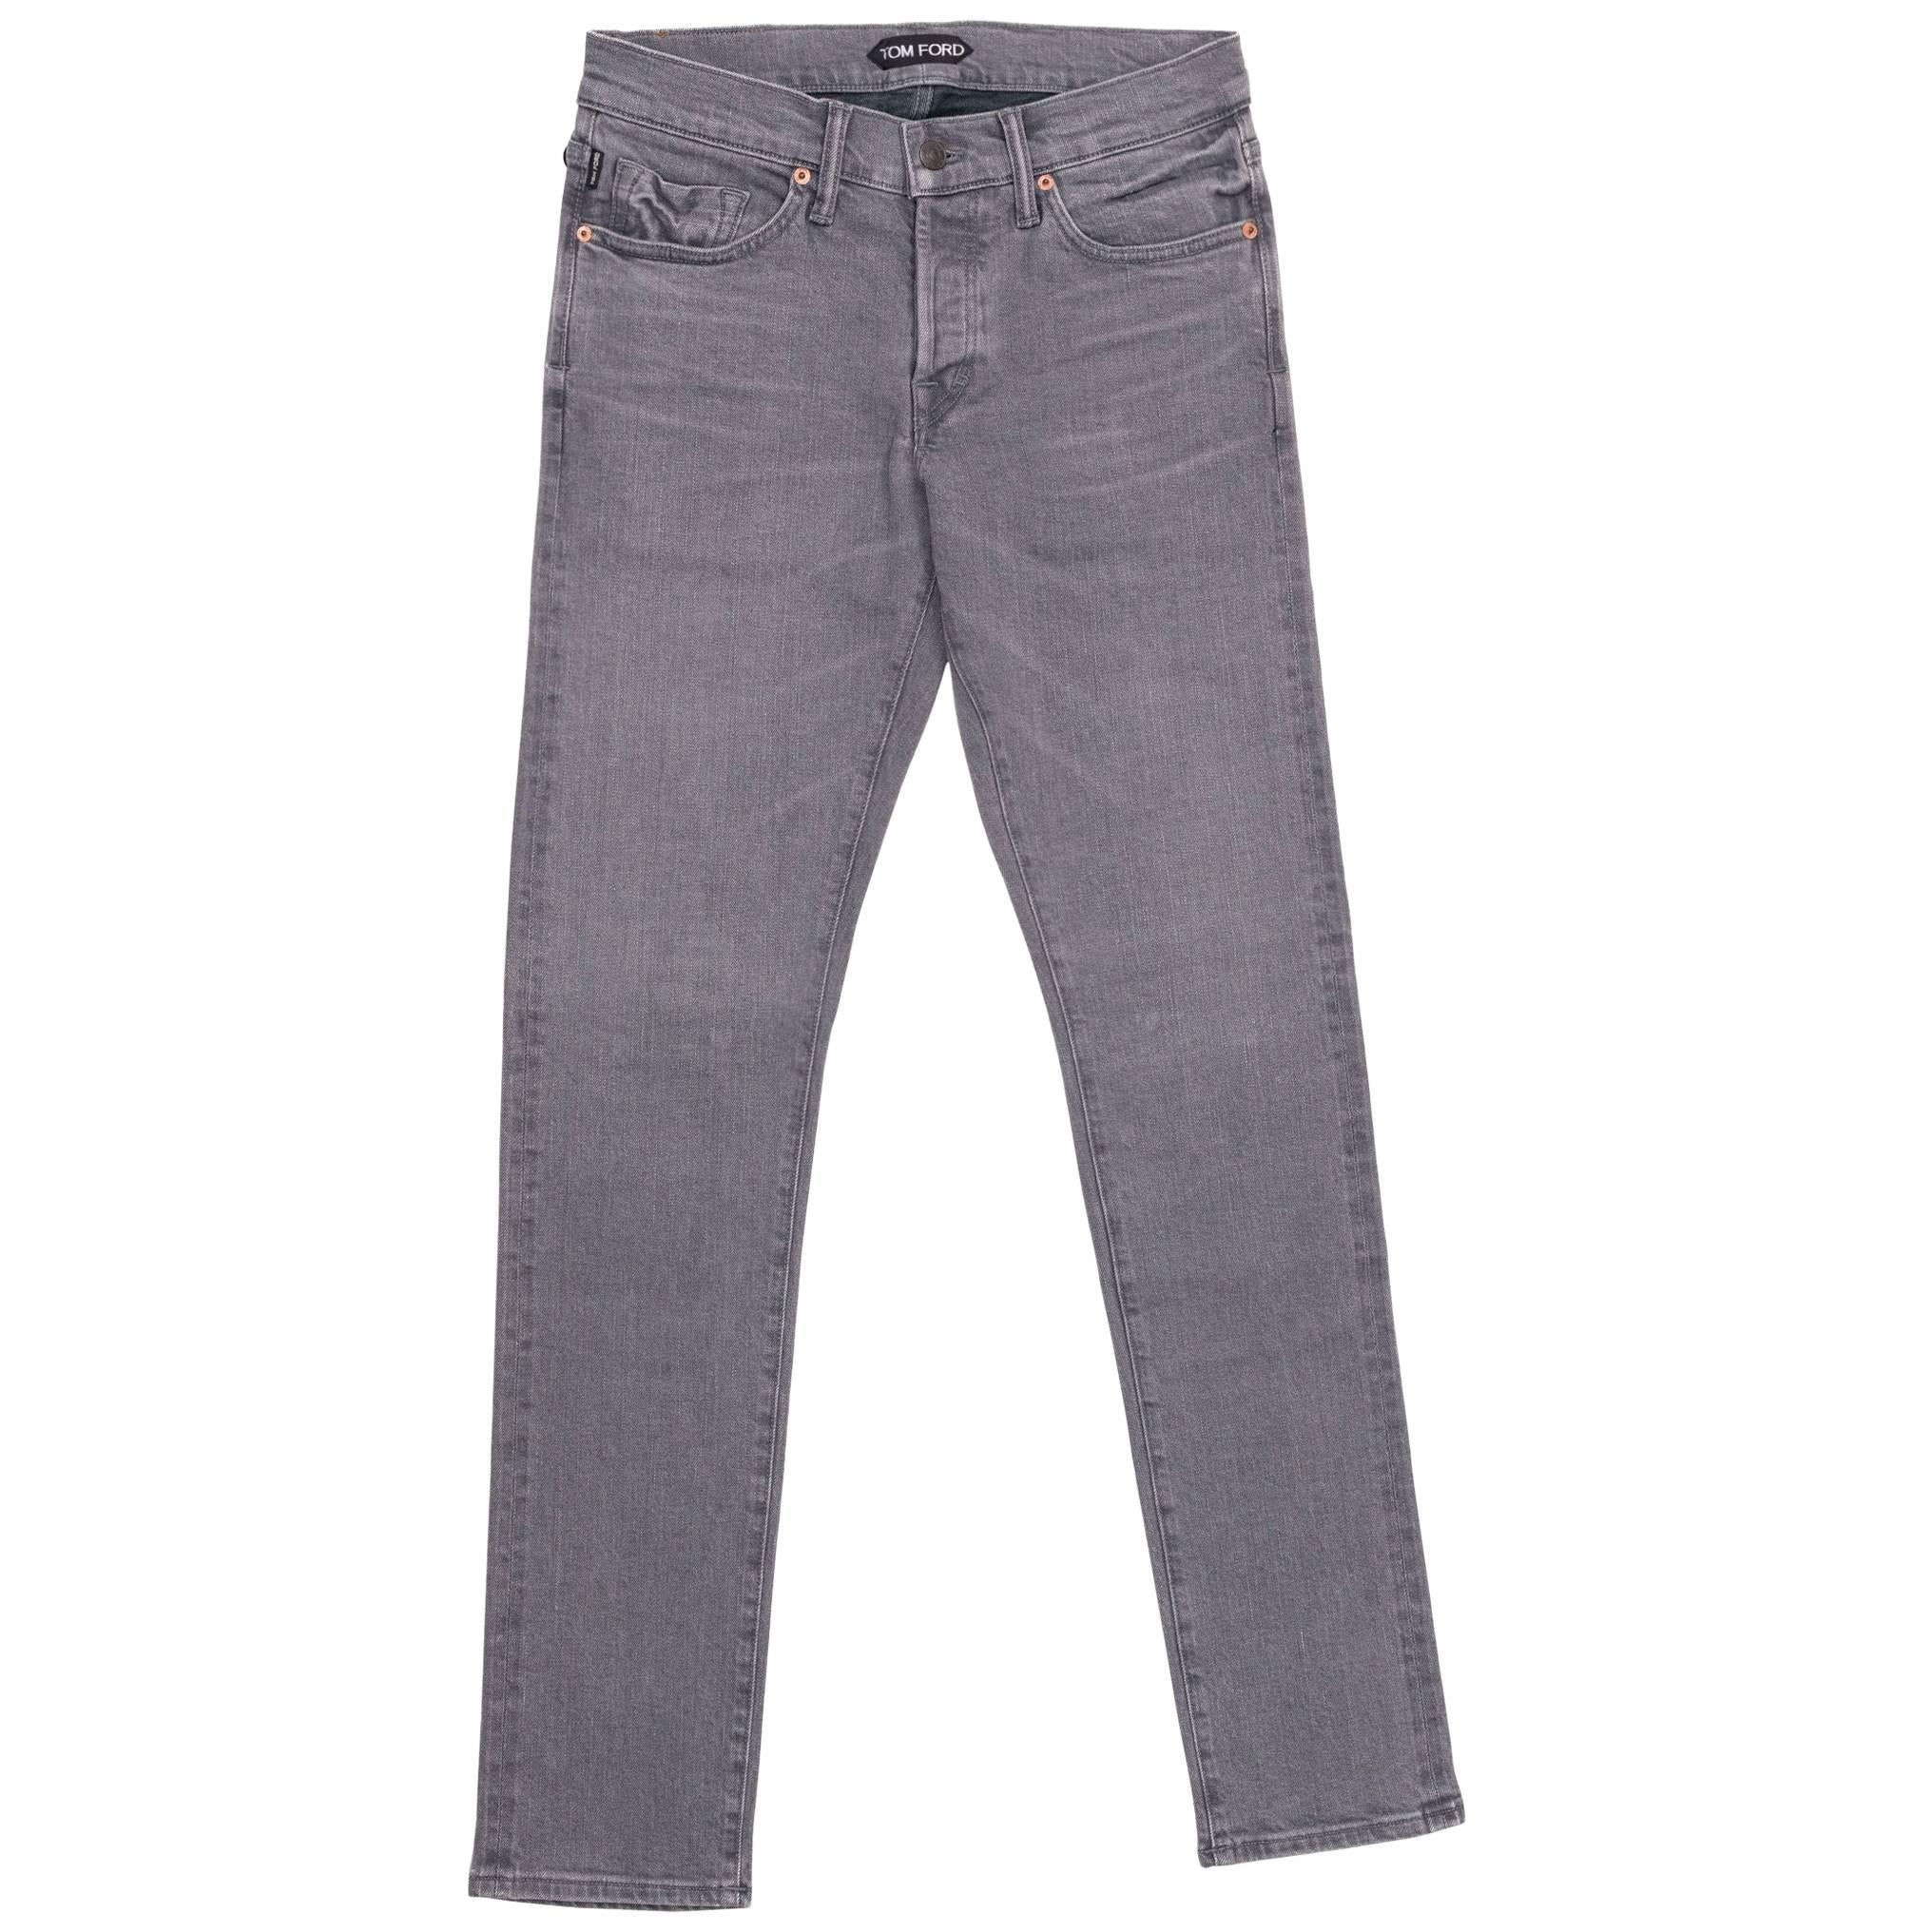 Tom Ford Selvedge Denim Jeans Light Grey Wash Size 33 Regular Fit Model  